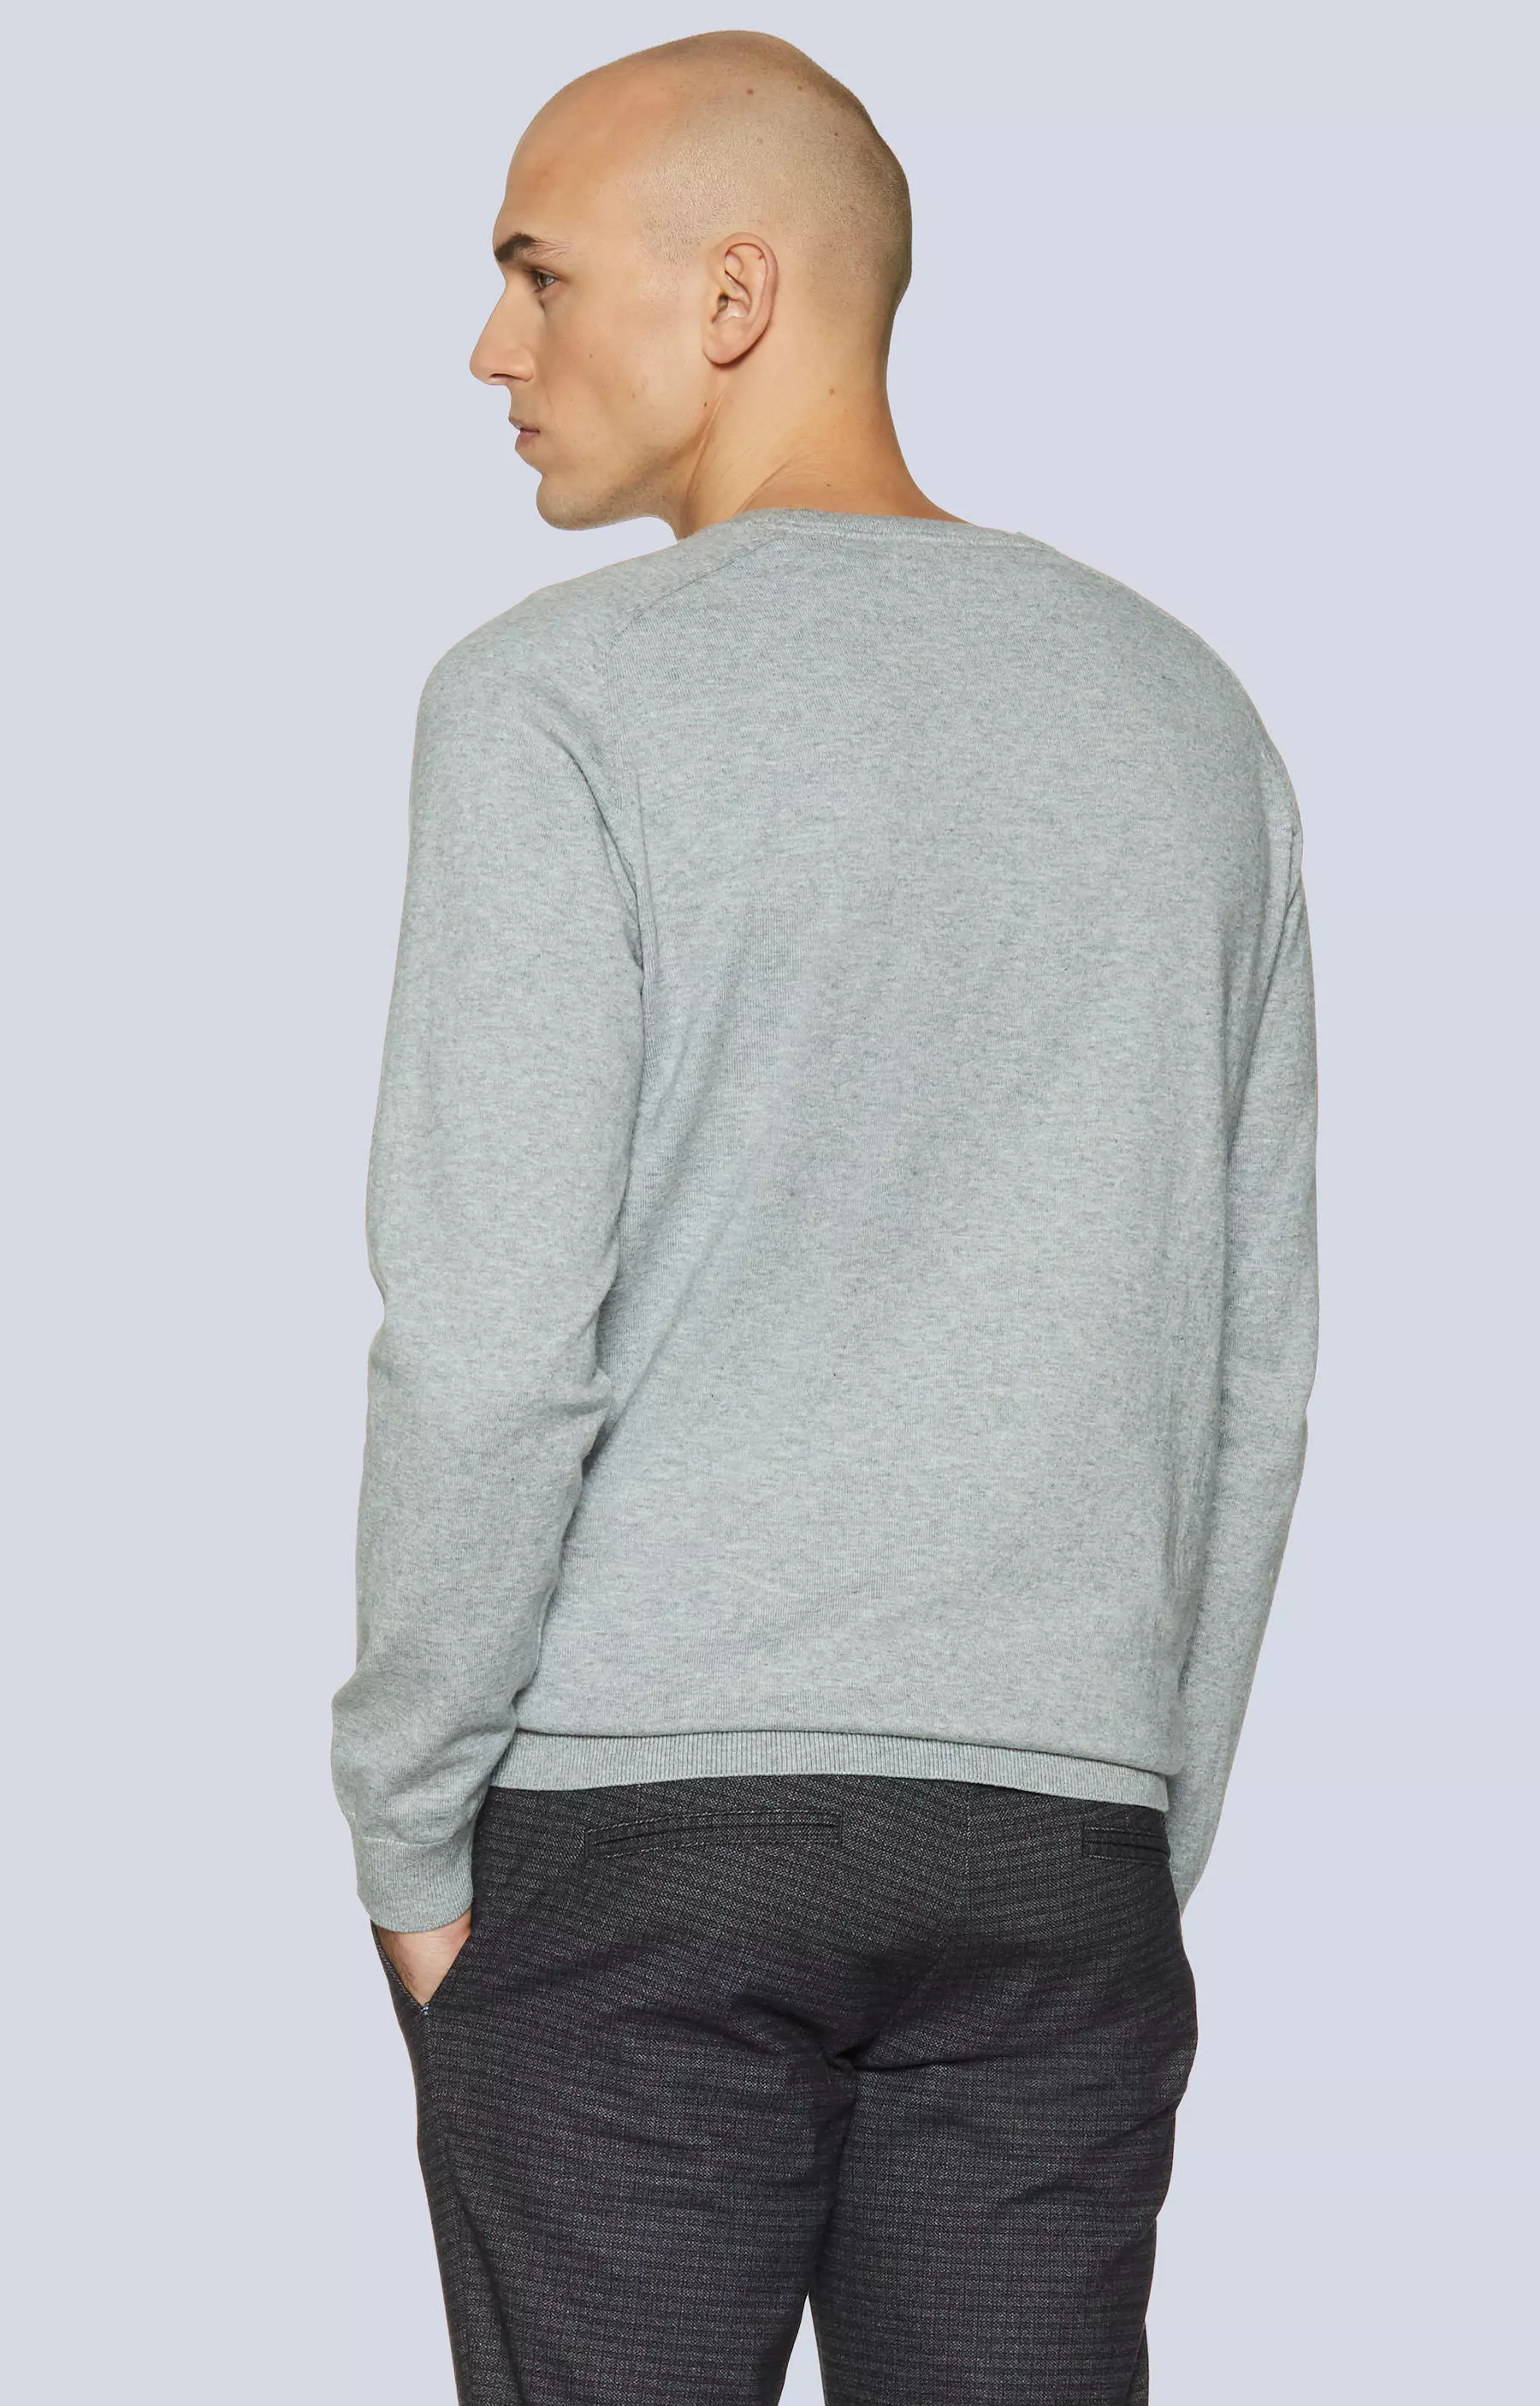 Moda Swetry Sweter z dzianiny New Look Sweter z dzianiny jasnoszary Melan\u017cowy W stylu casual 